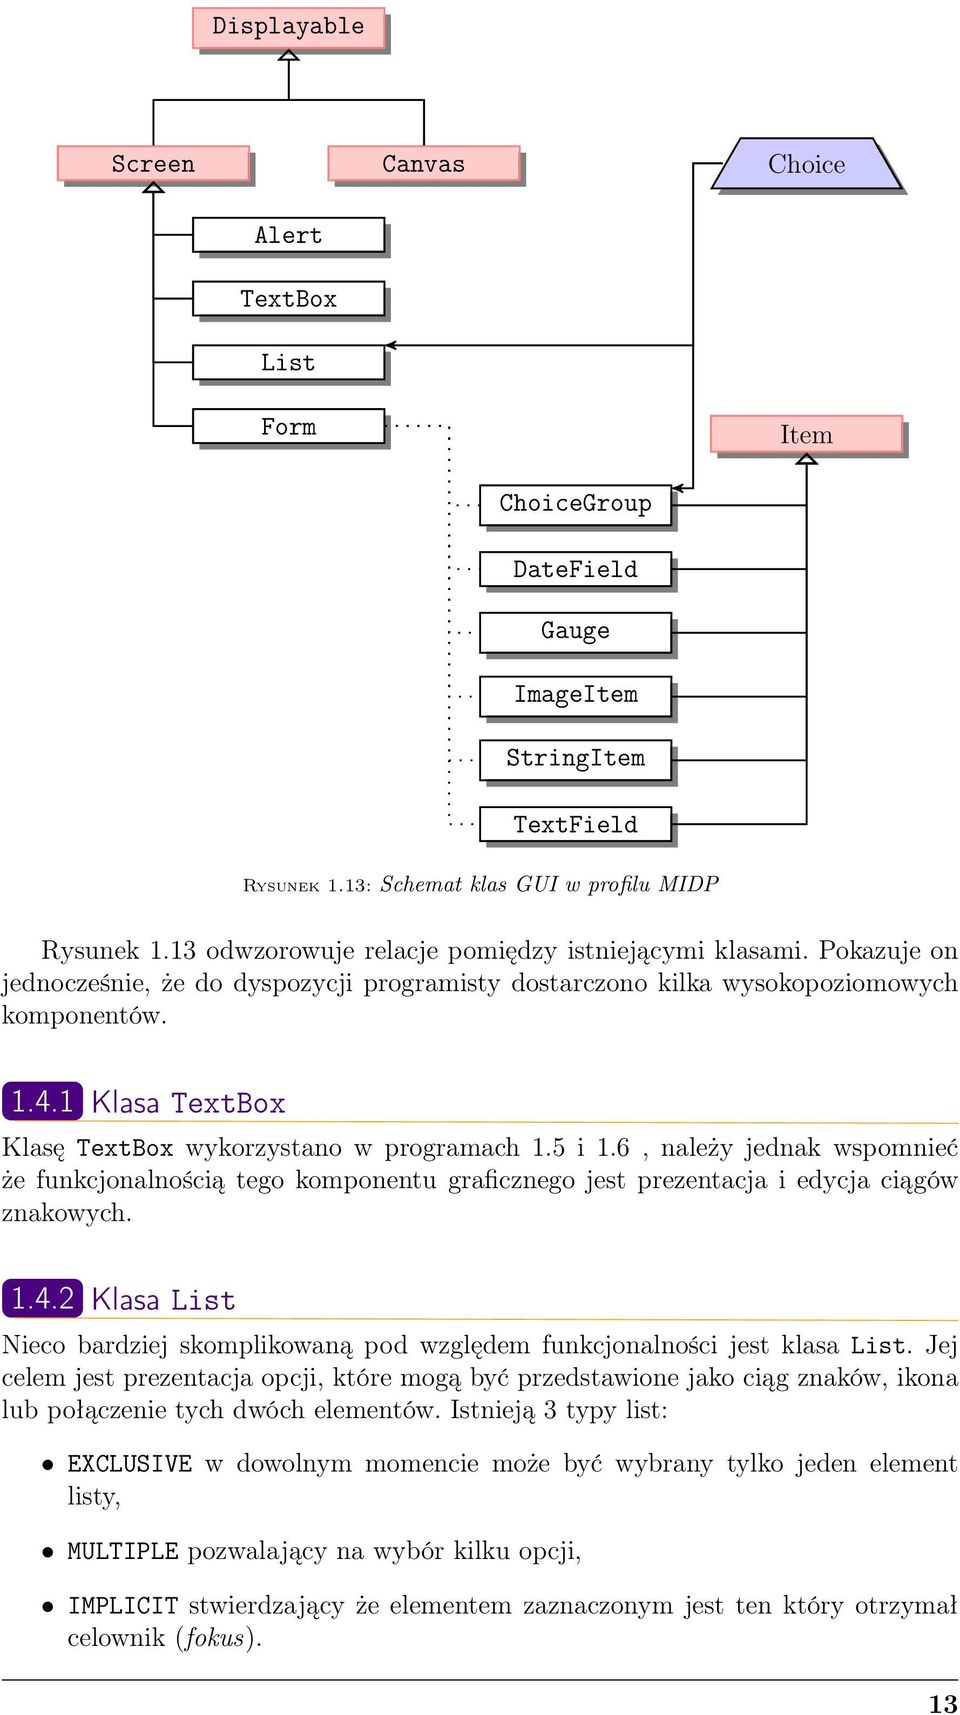 1 Klasa TextBox Klasę TextBox wykorzystano w programach 1.5 i 1.6, należy jednak wspomnieć że funkcjonalnością tego komponentu graficznego jest prezentacja i edycja ciągów znakowych. 1.4.